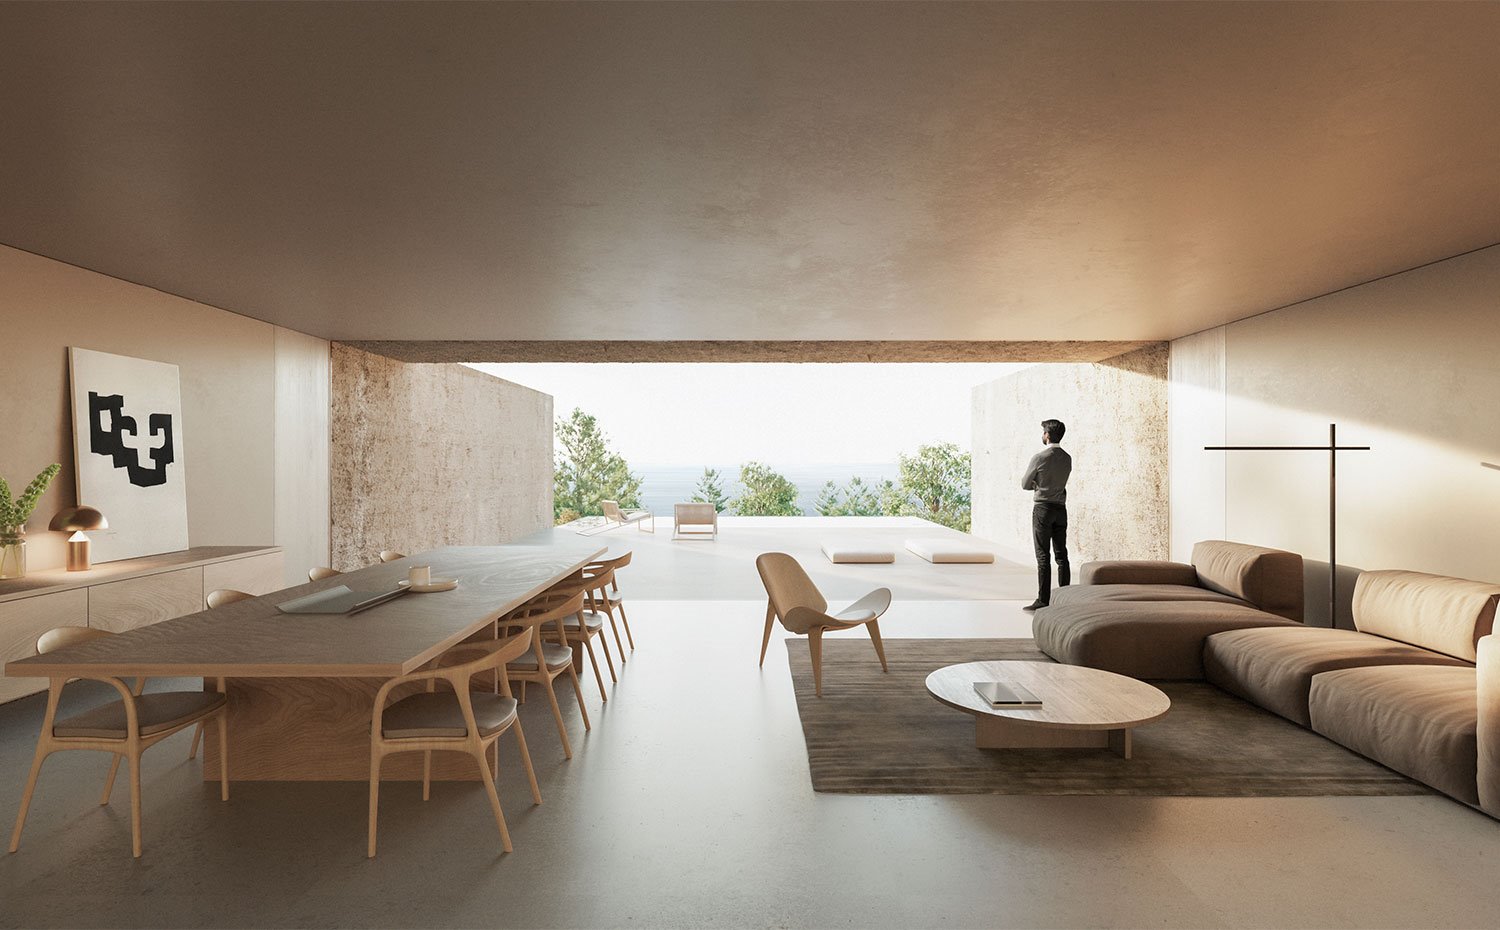 Interior de salón y comedor con mobiliario en madera y tonos neutros con gran apertura hacia exterior